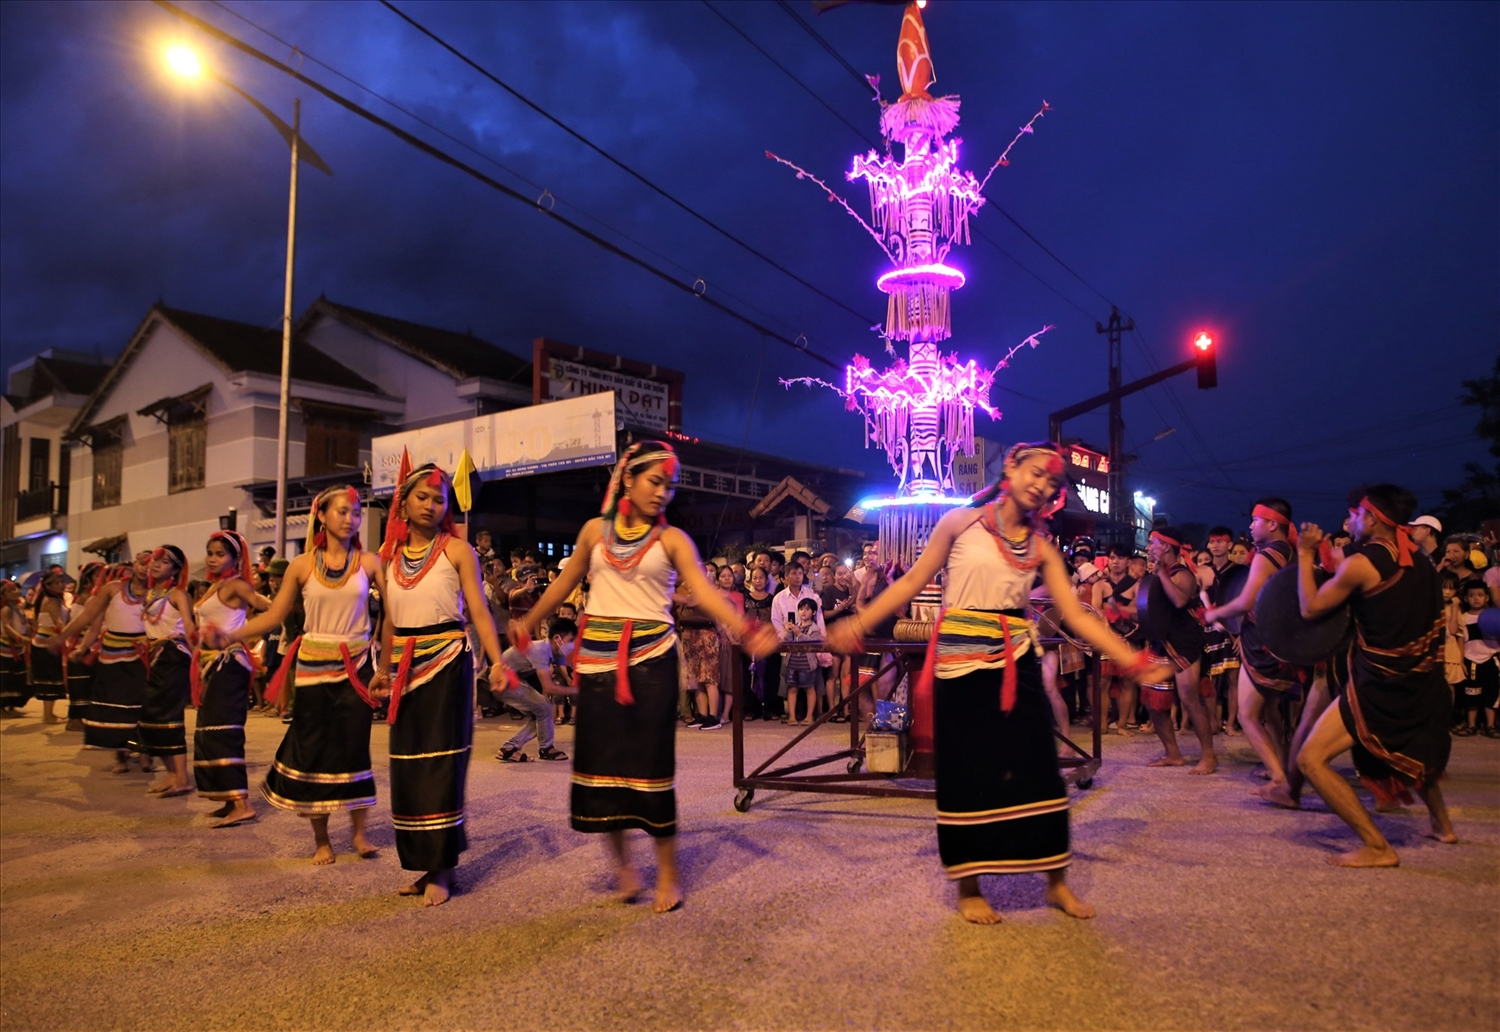 Ngày hội là dịp giới thiệu, quảng bá tiềm năng, thế mạnh về văn hóa truyền thống của đồng bào các dân tộc miền núi tỉnh Quảng Nam